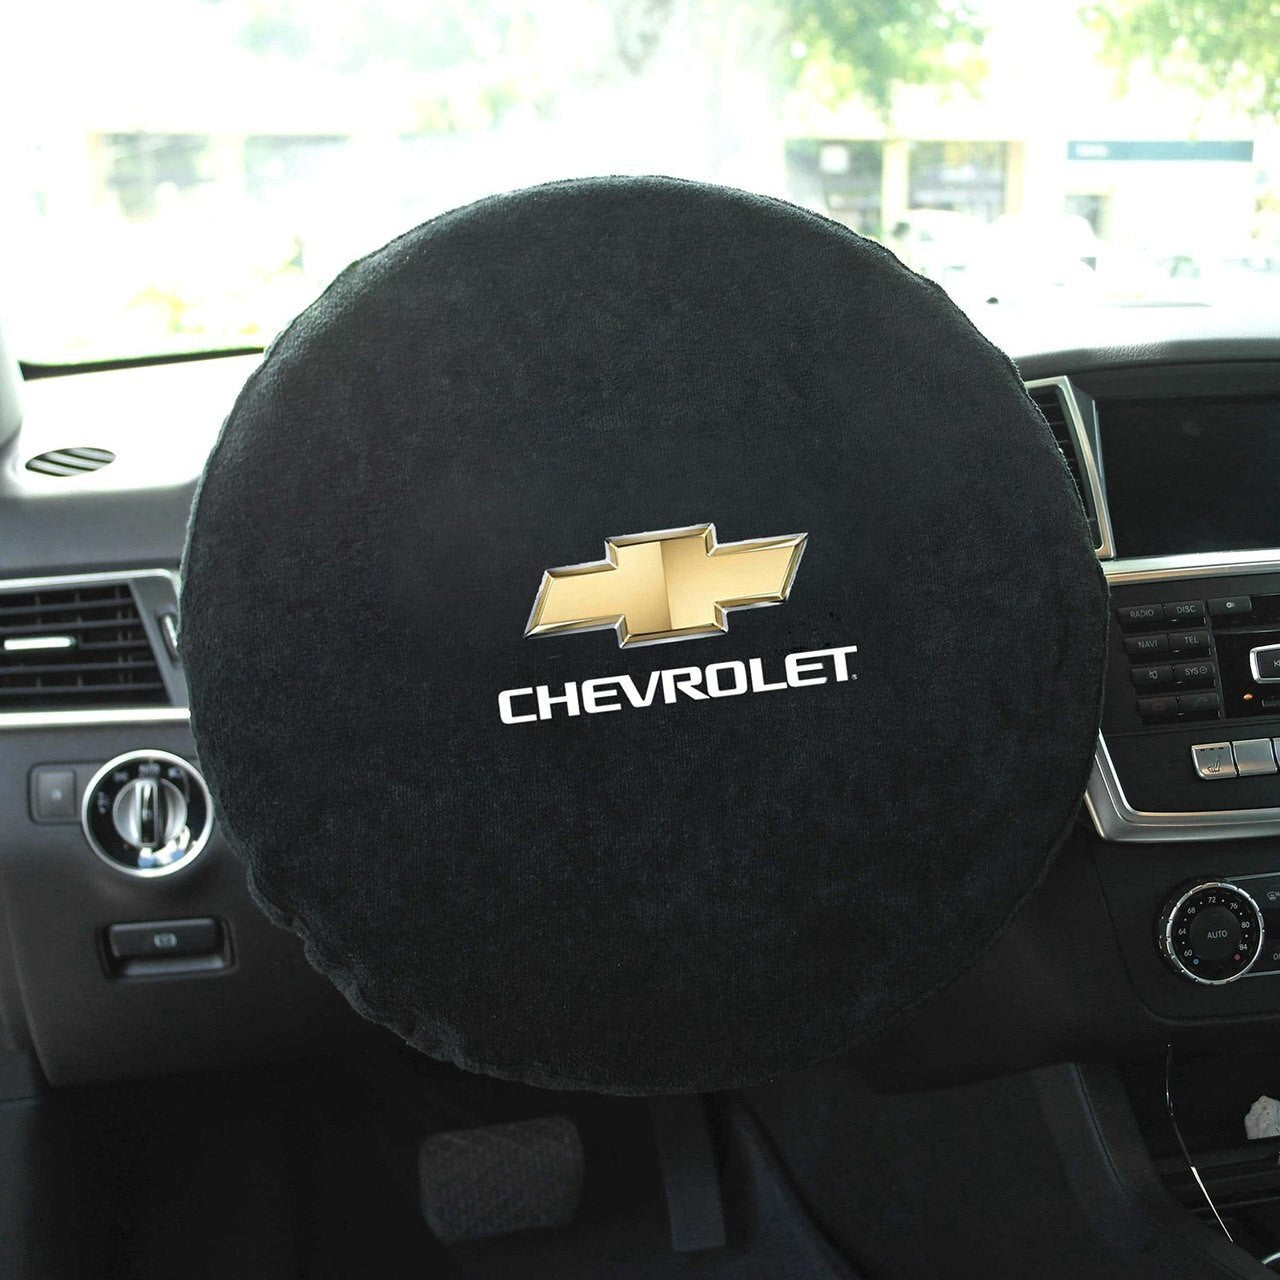 Chevrolet Steering Wheel Cover